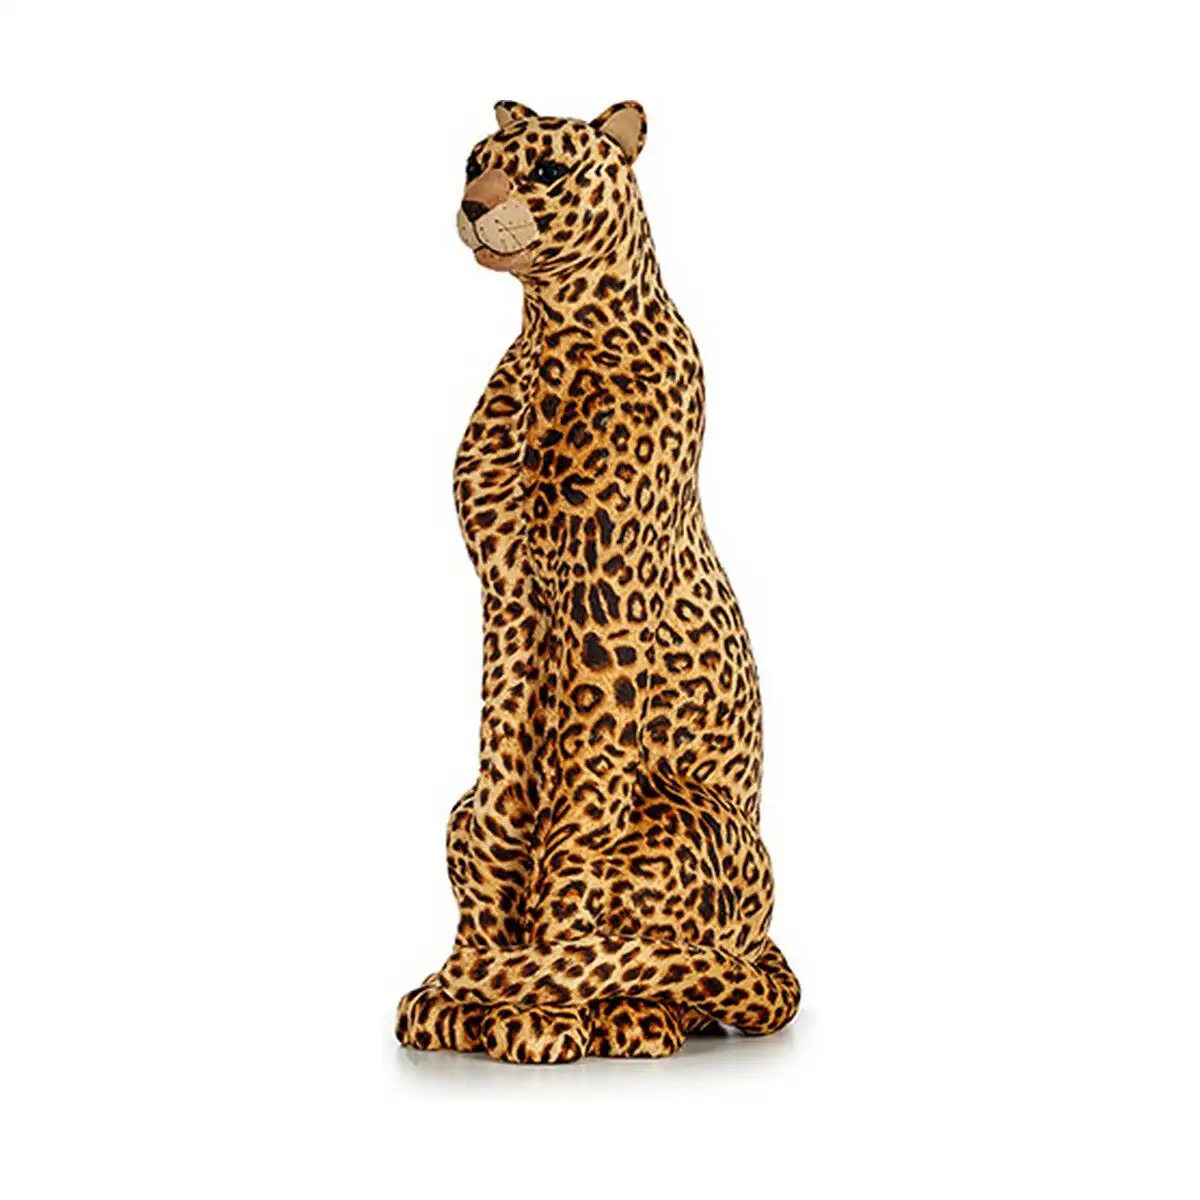 Figurine decorative marron leopard 34 x 79 x 30 cm dore synthetique_2912. DIAYTAR SENEGAL - Votre Portail Vers l'Exclusivité. Explorez notre boutique en ligne pour découvrir des produits uniques et raffinés, conçus pour ceux qui recherchent l'excellence.